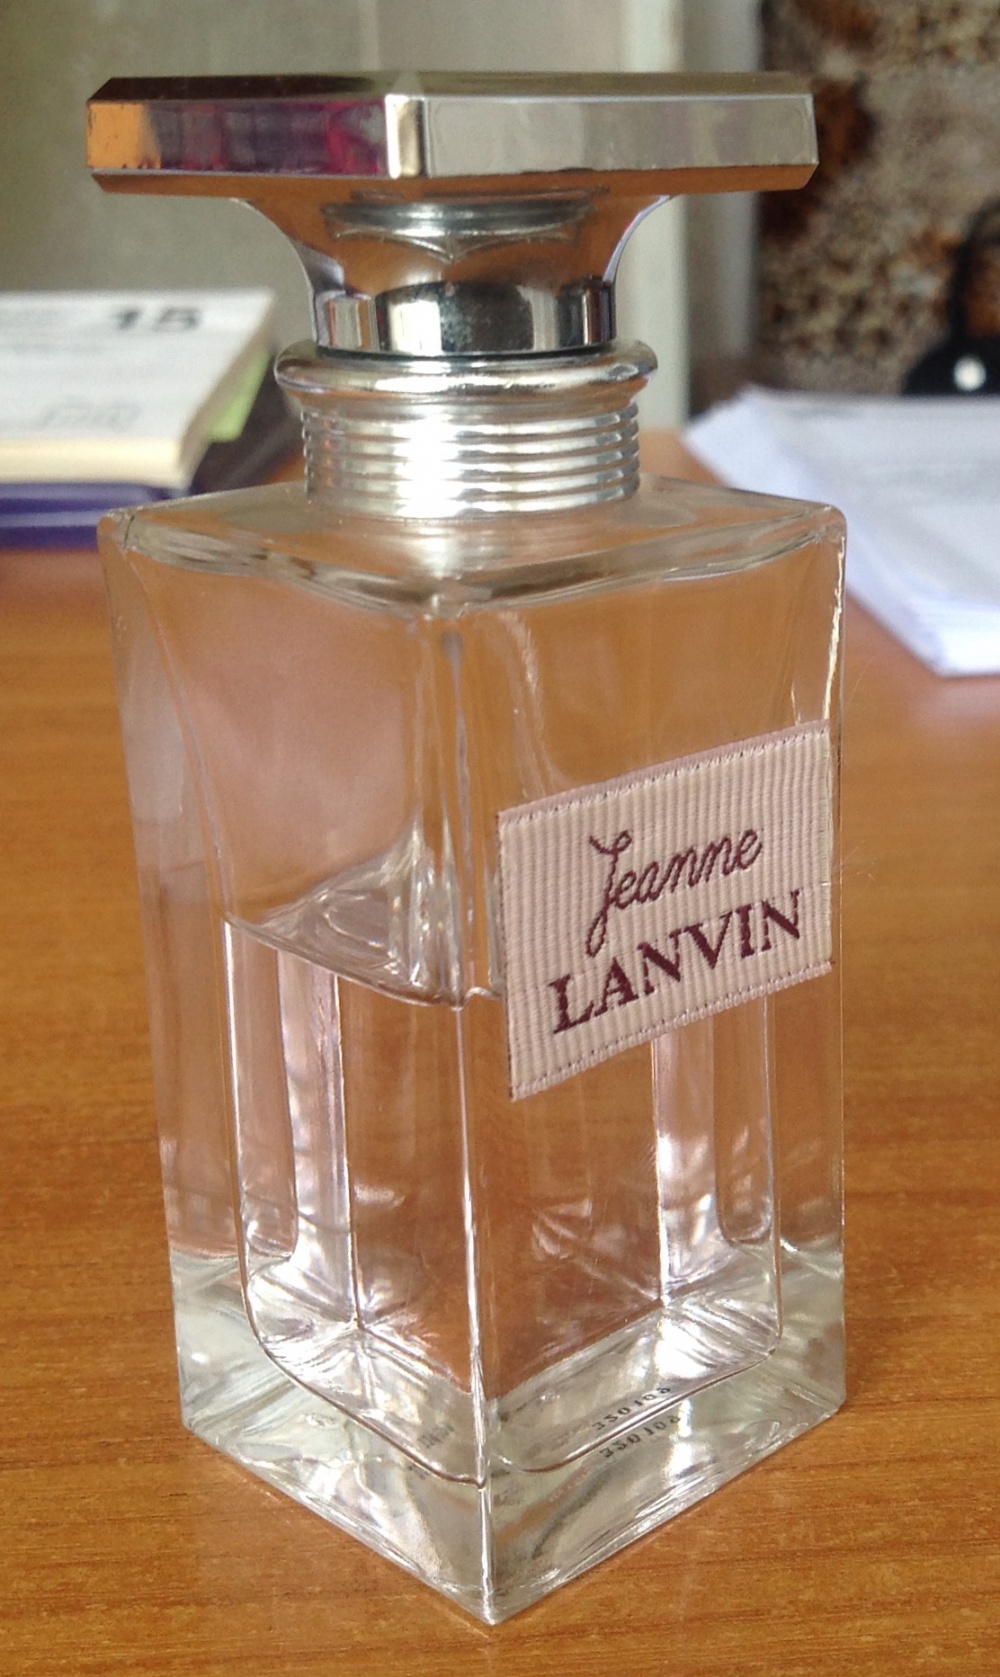 Парфюмированная вода Jeanne Lanvin, Lanvin, 50 ml